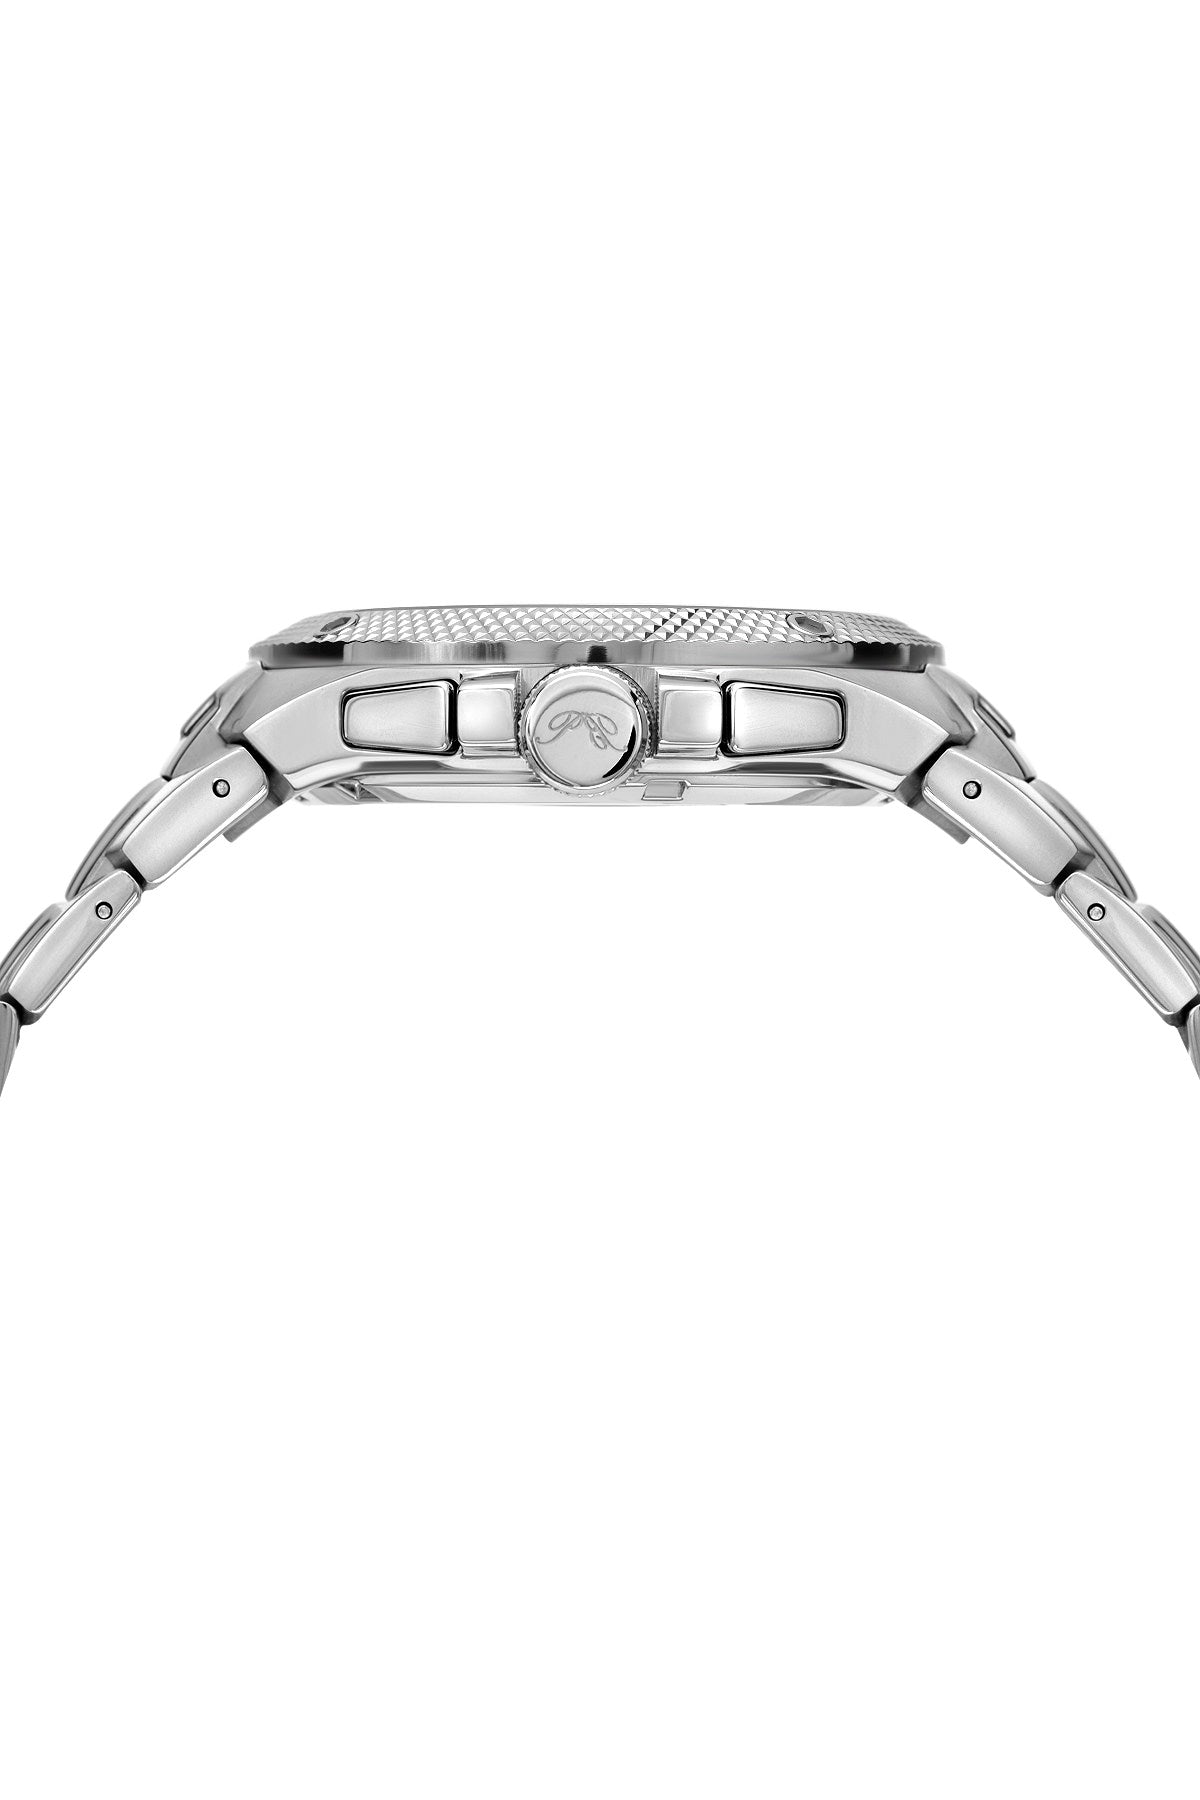 Porsamo Bleu Pierre luxury chronograph men's stainless steel watch, silver, white 251APIS